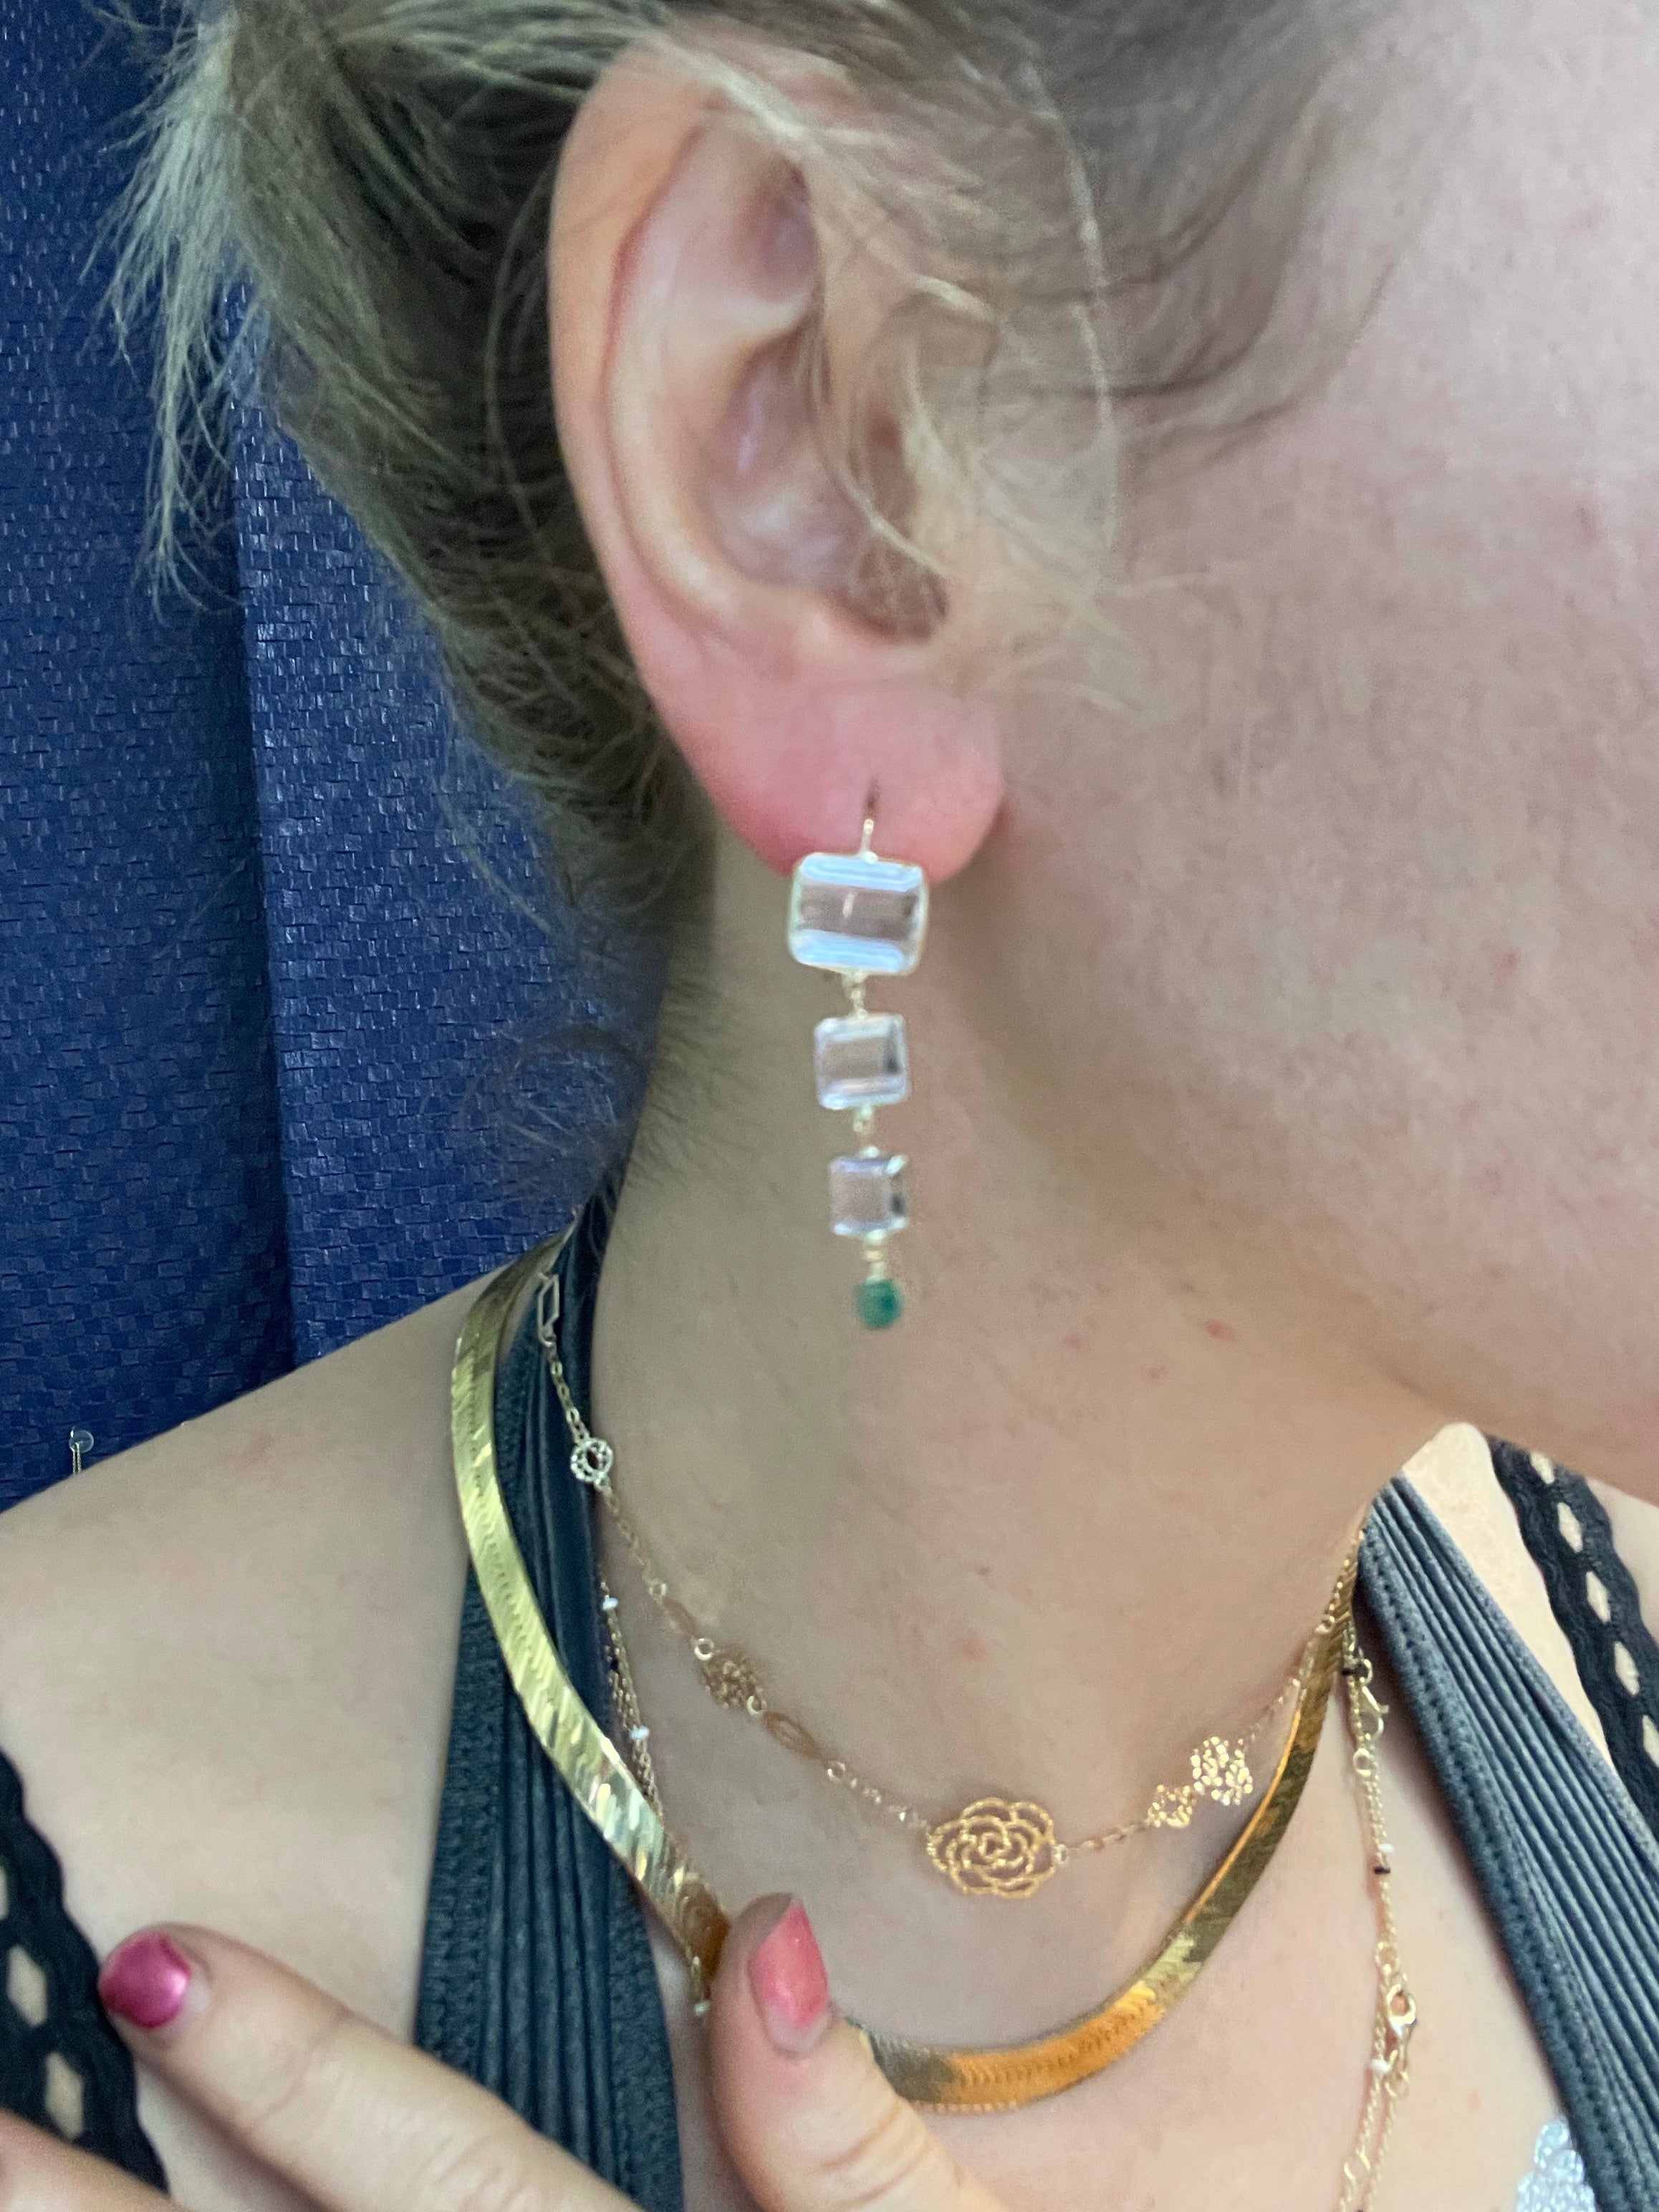 Kunzite and Colombian emerald drop earrings